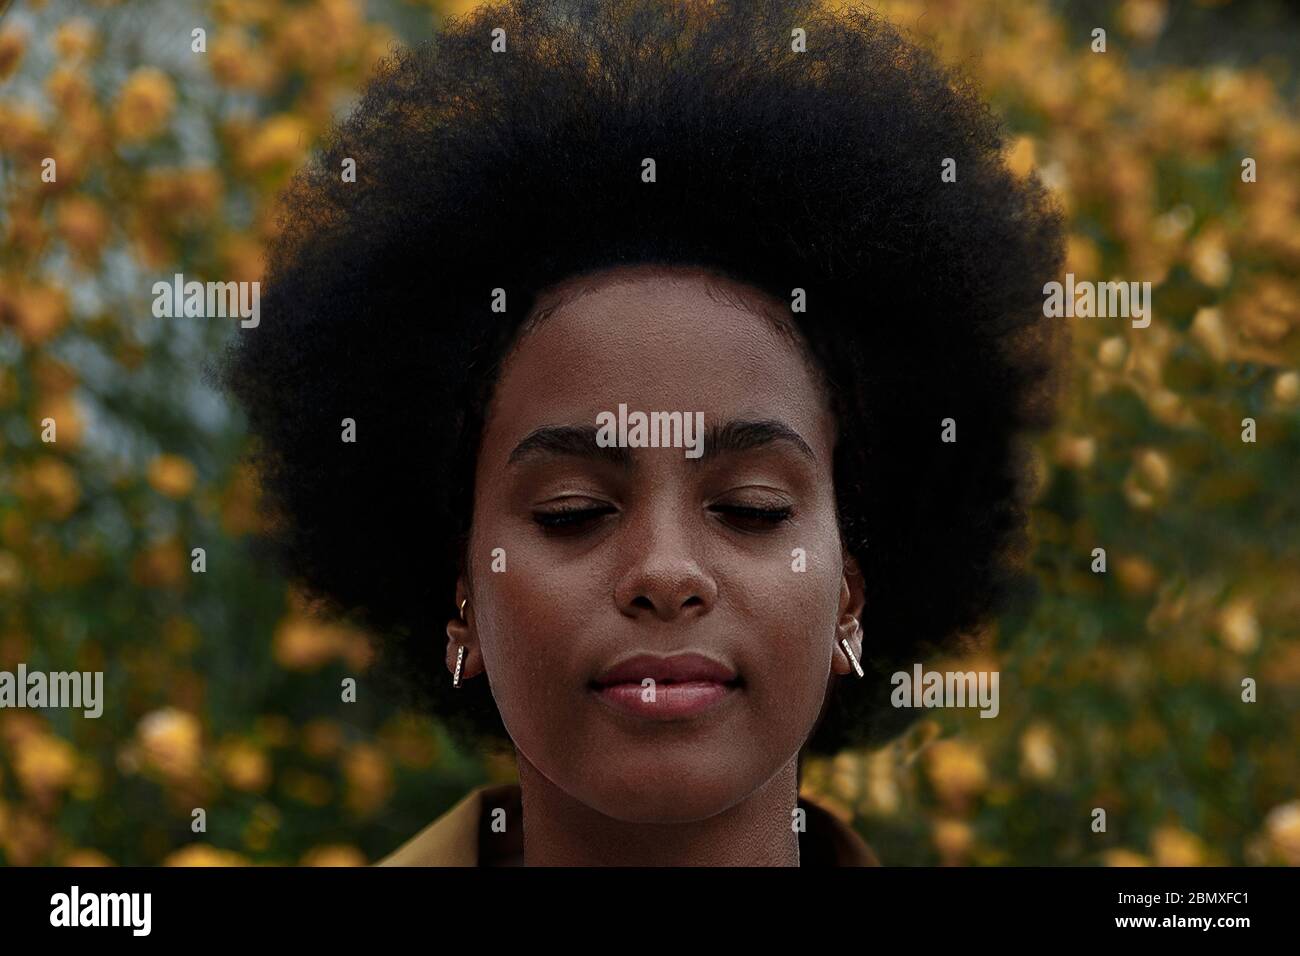 donna afro pensierosa con occhi chiusi in un giardino Foto Stock